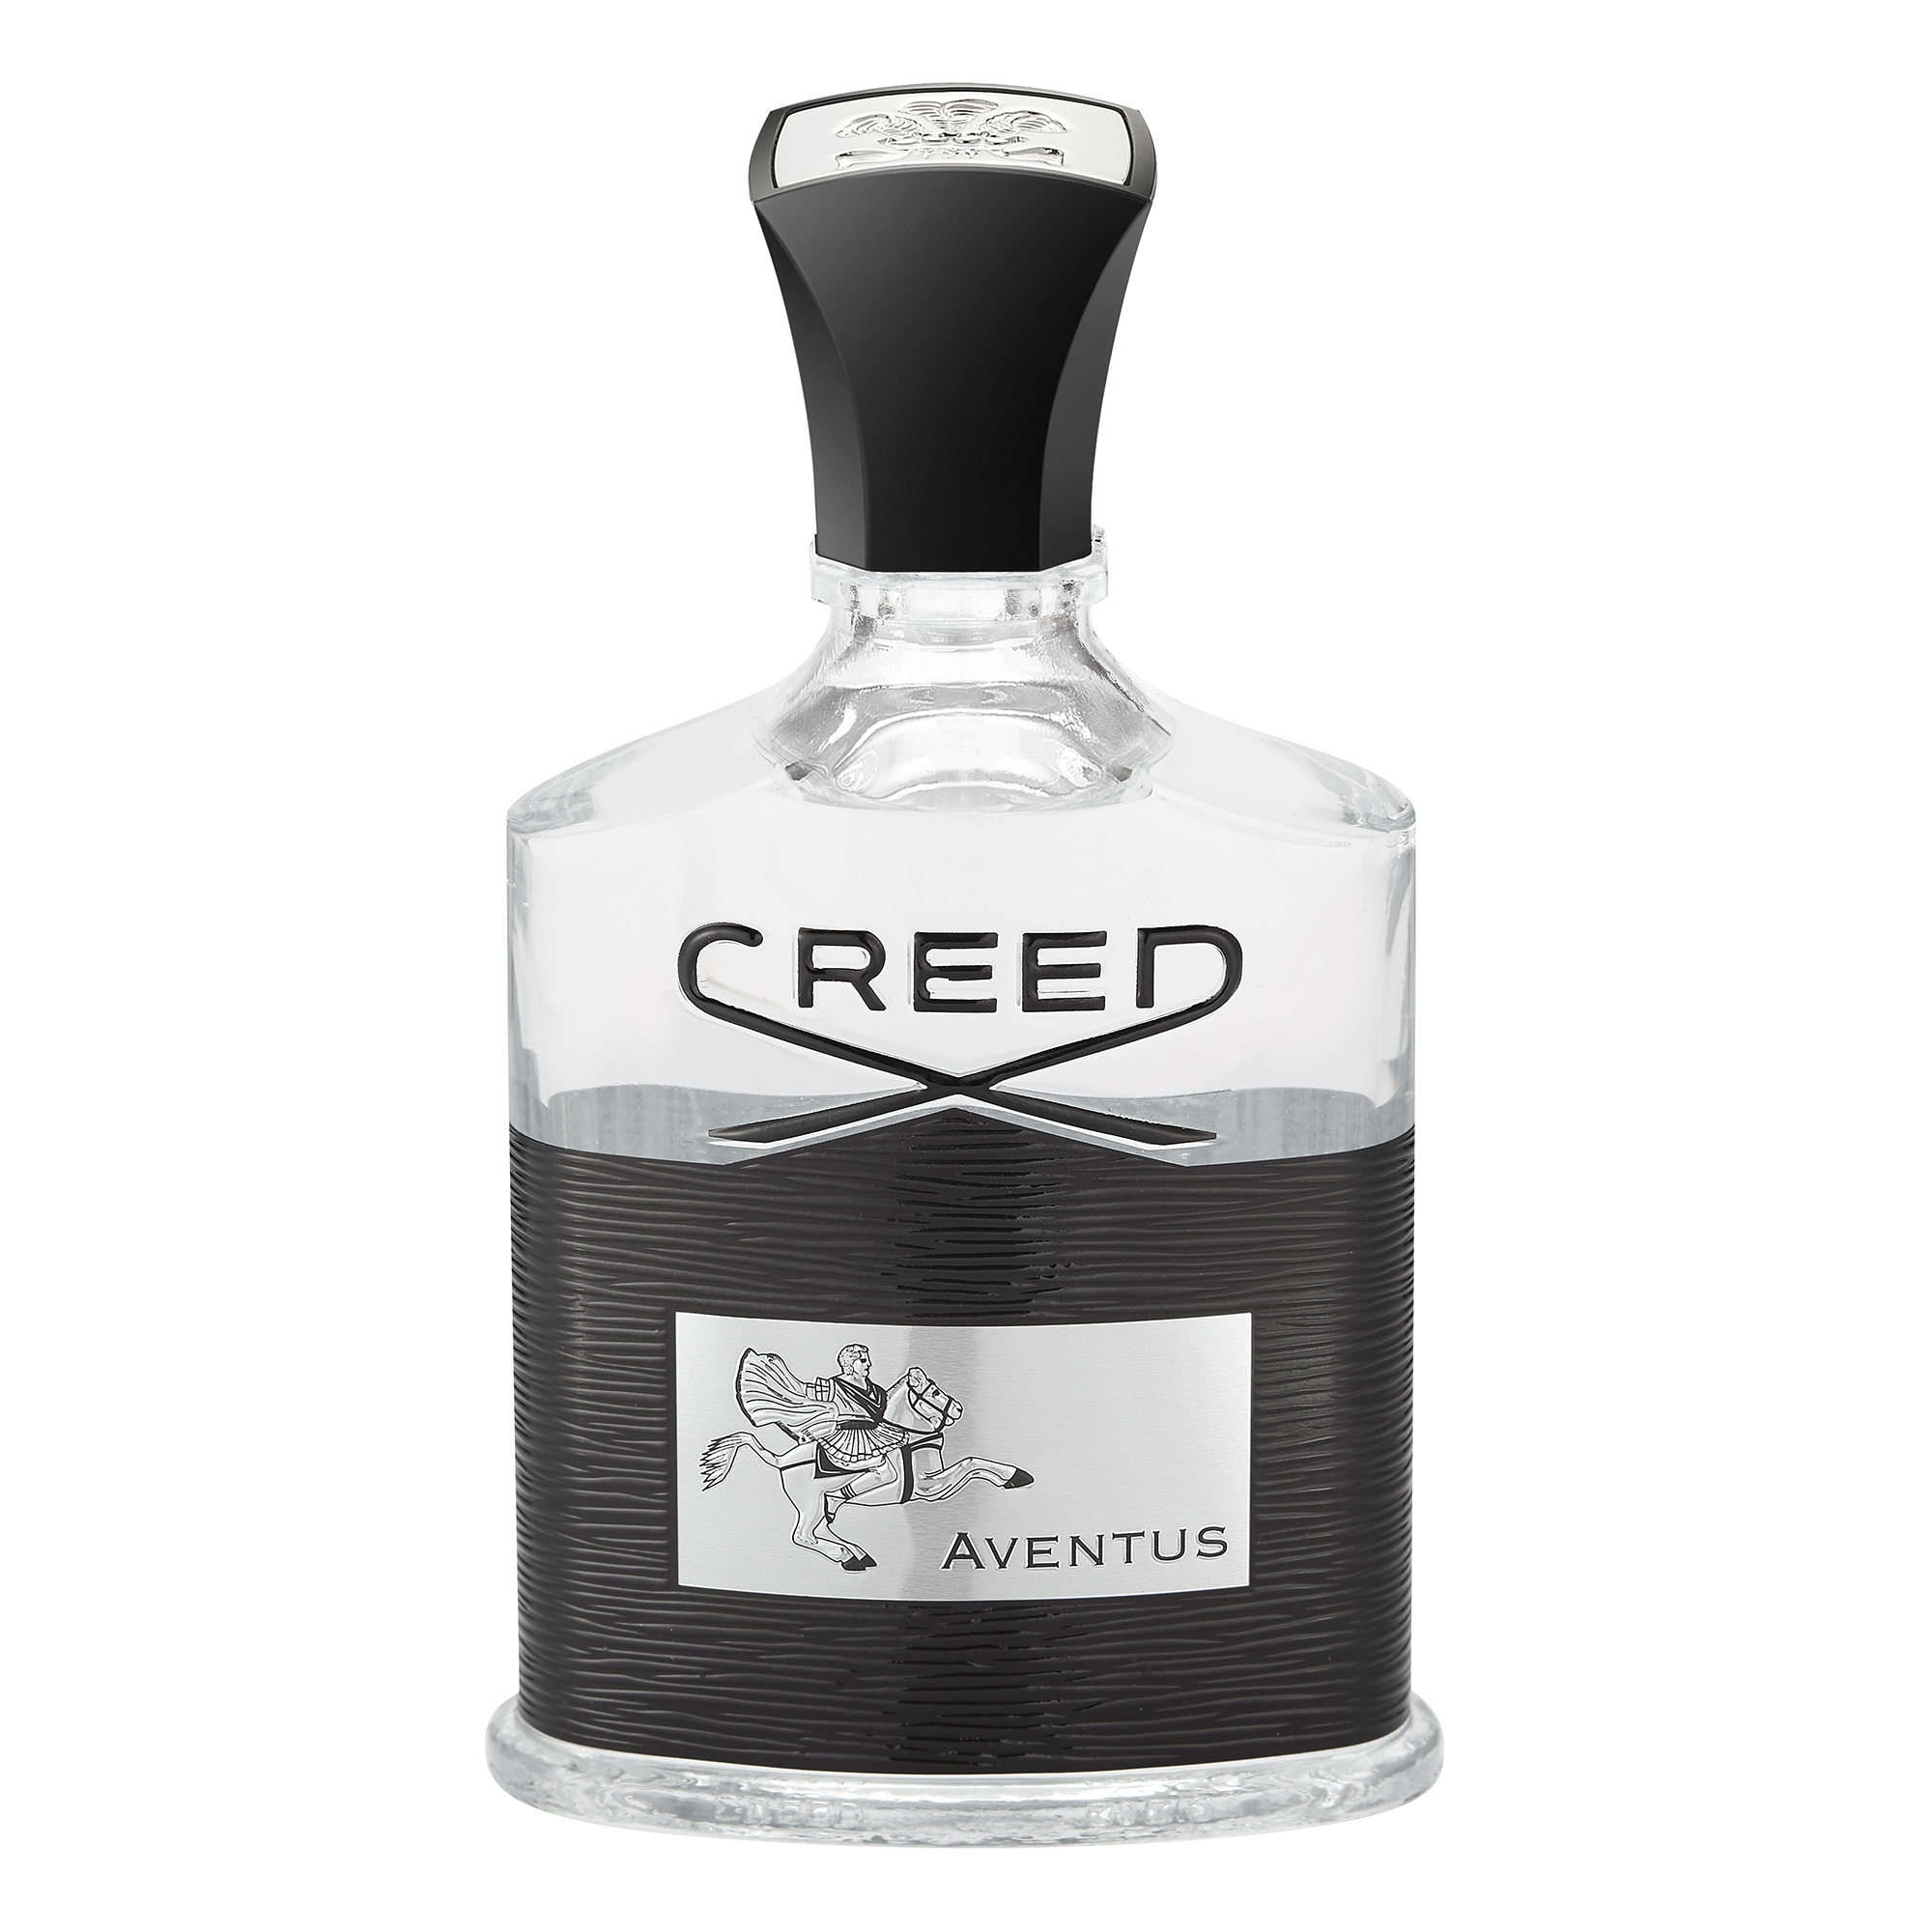 Creed Aventus 100ml Spray